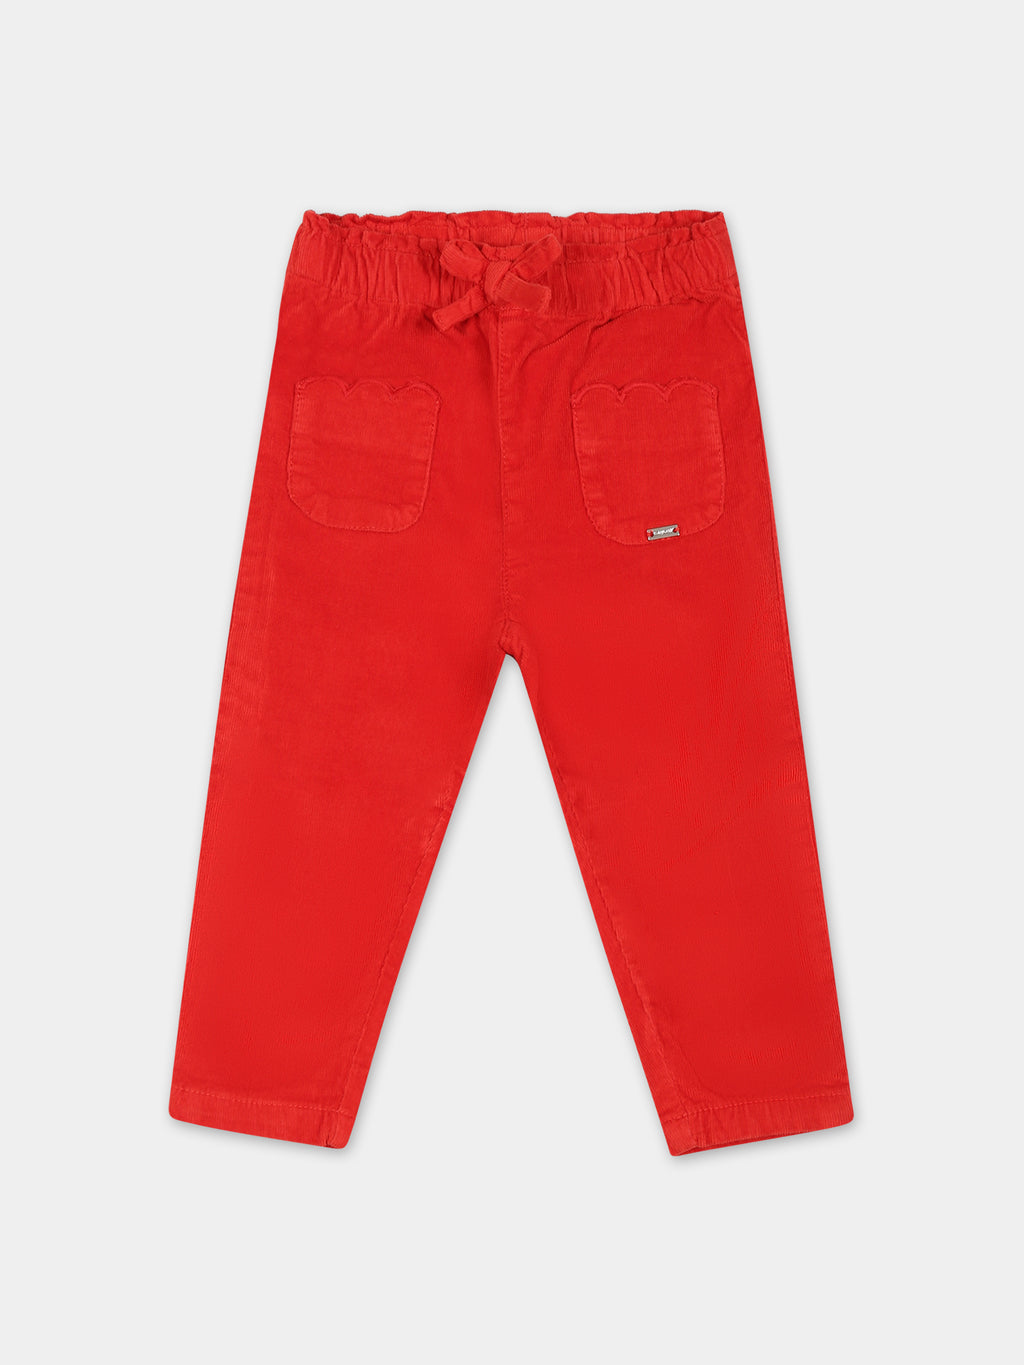 Pantaloni rossi per neonata con logo